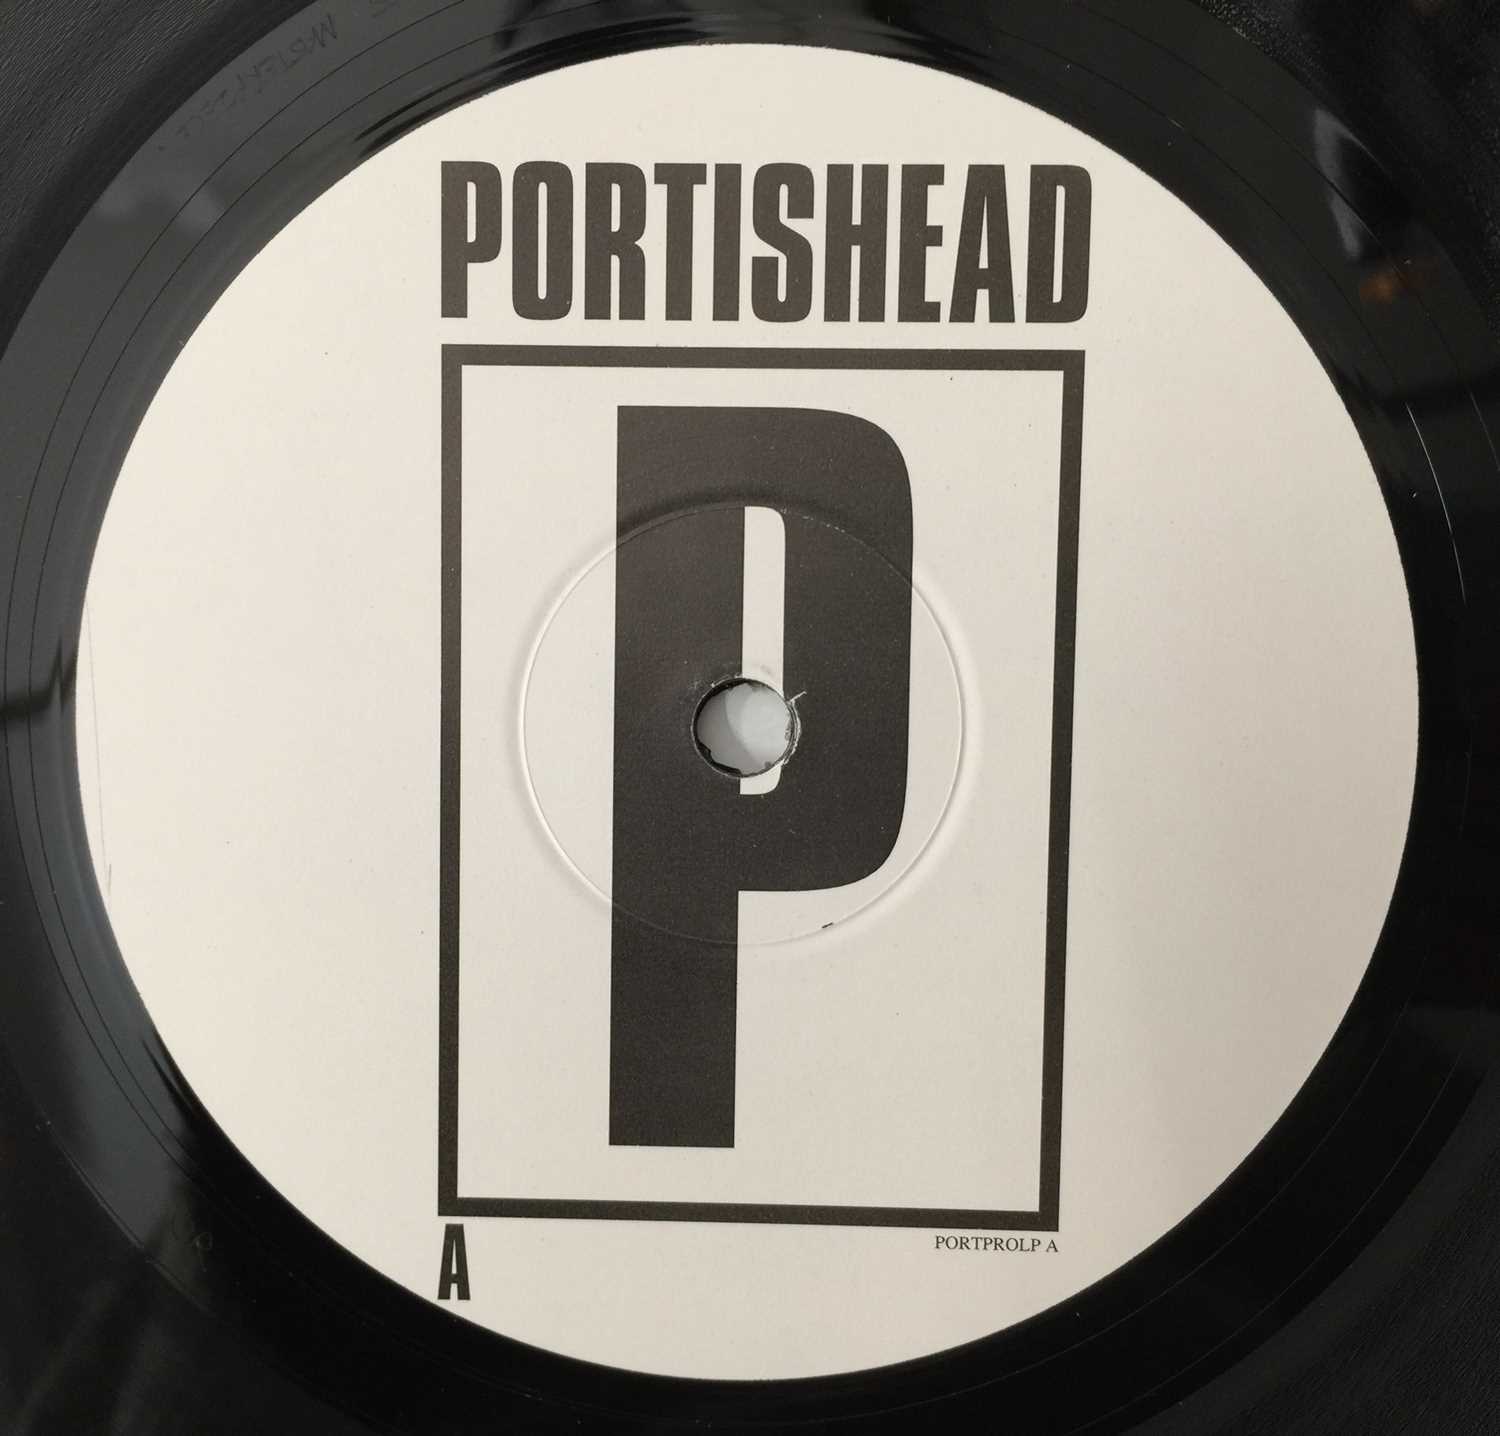 PORTISHEAD - PORTISHEAD (ORIGINAL 1997 PROMO 2 x 12" ALBUM - PORT LP PRO) - Image 6 of 7